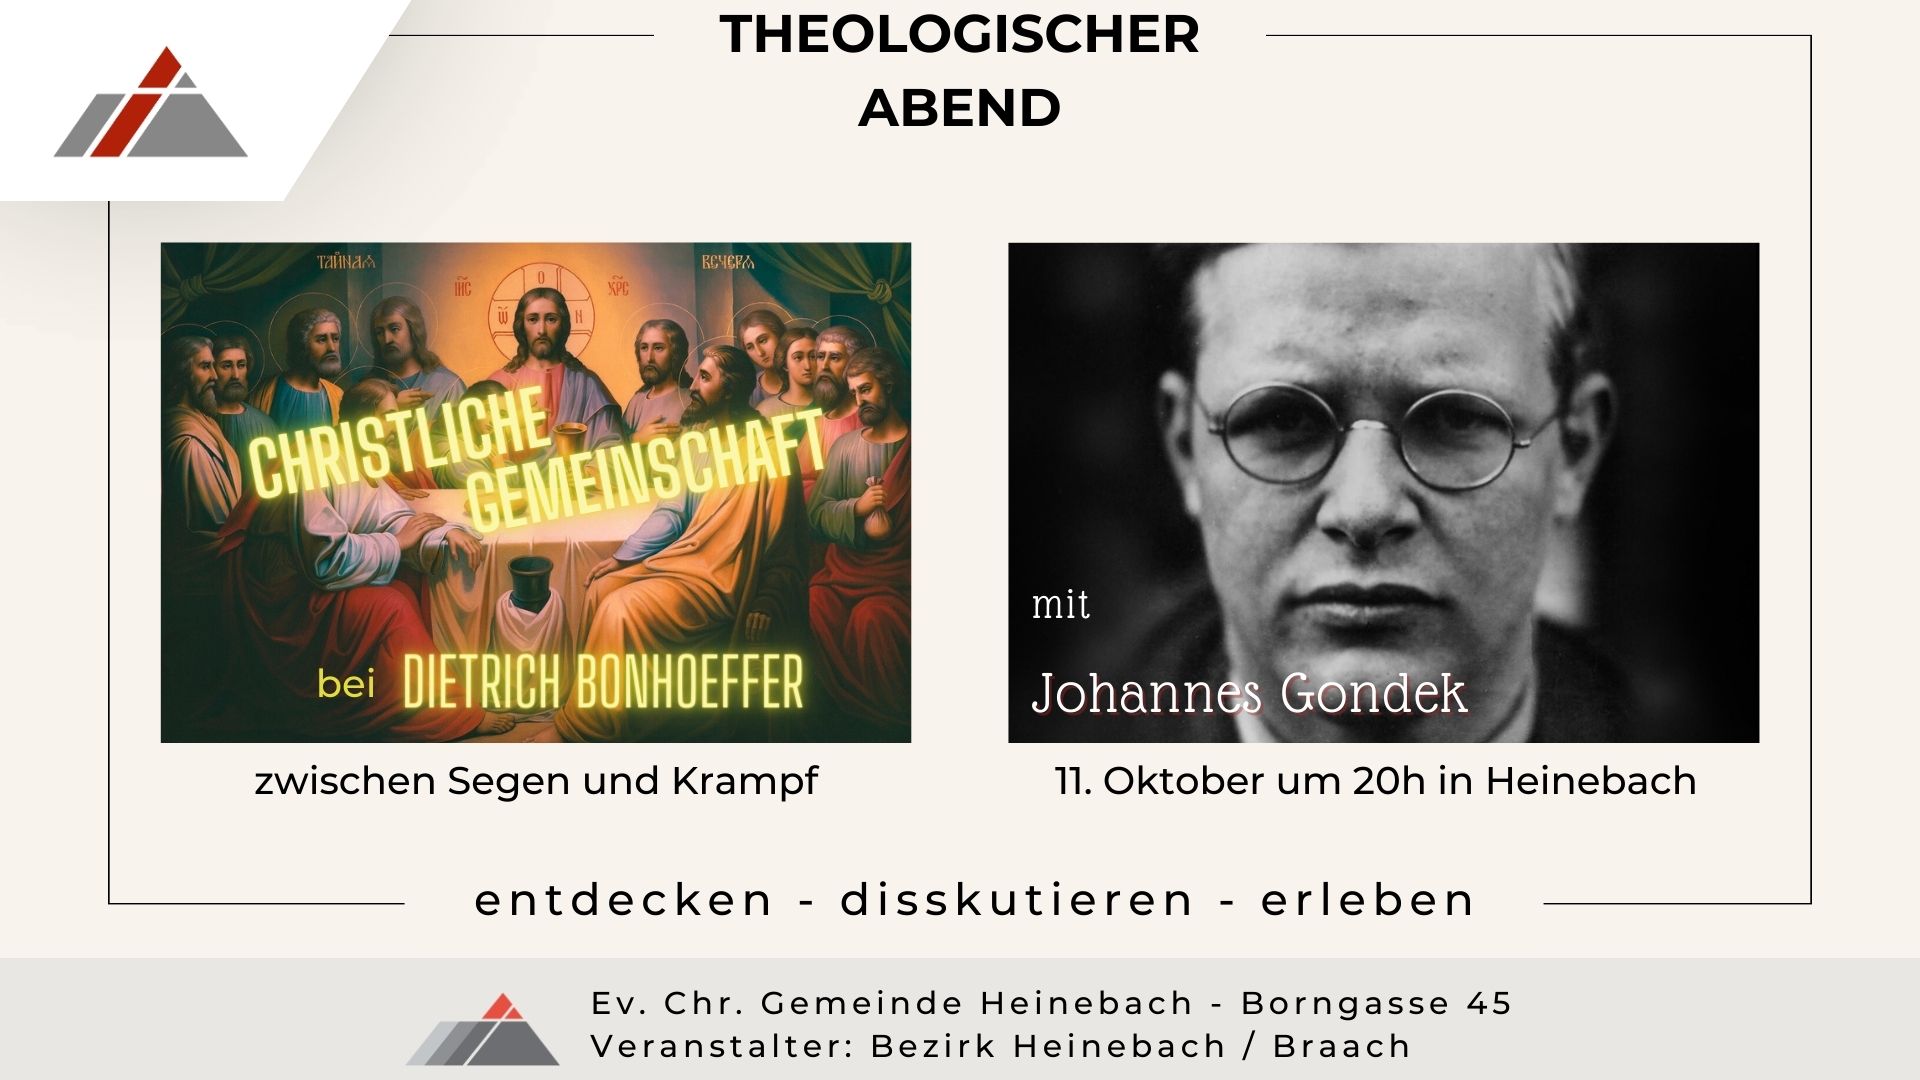 Evangelische Chrischona-Gemeinde Alheim-Heinebach